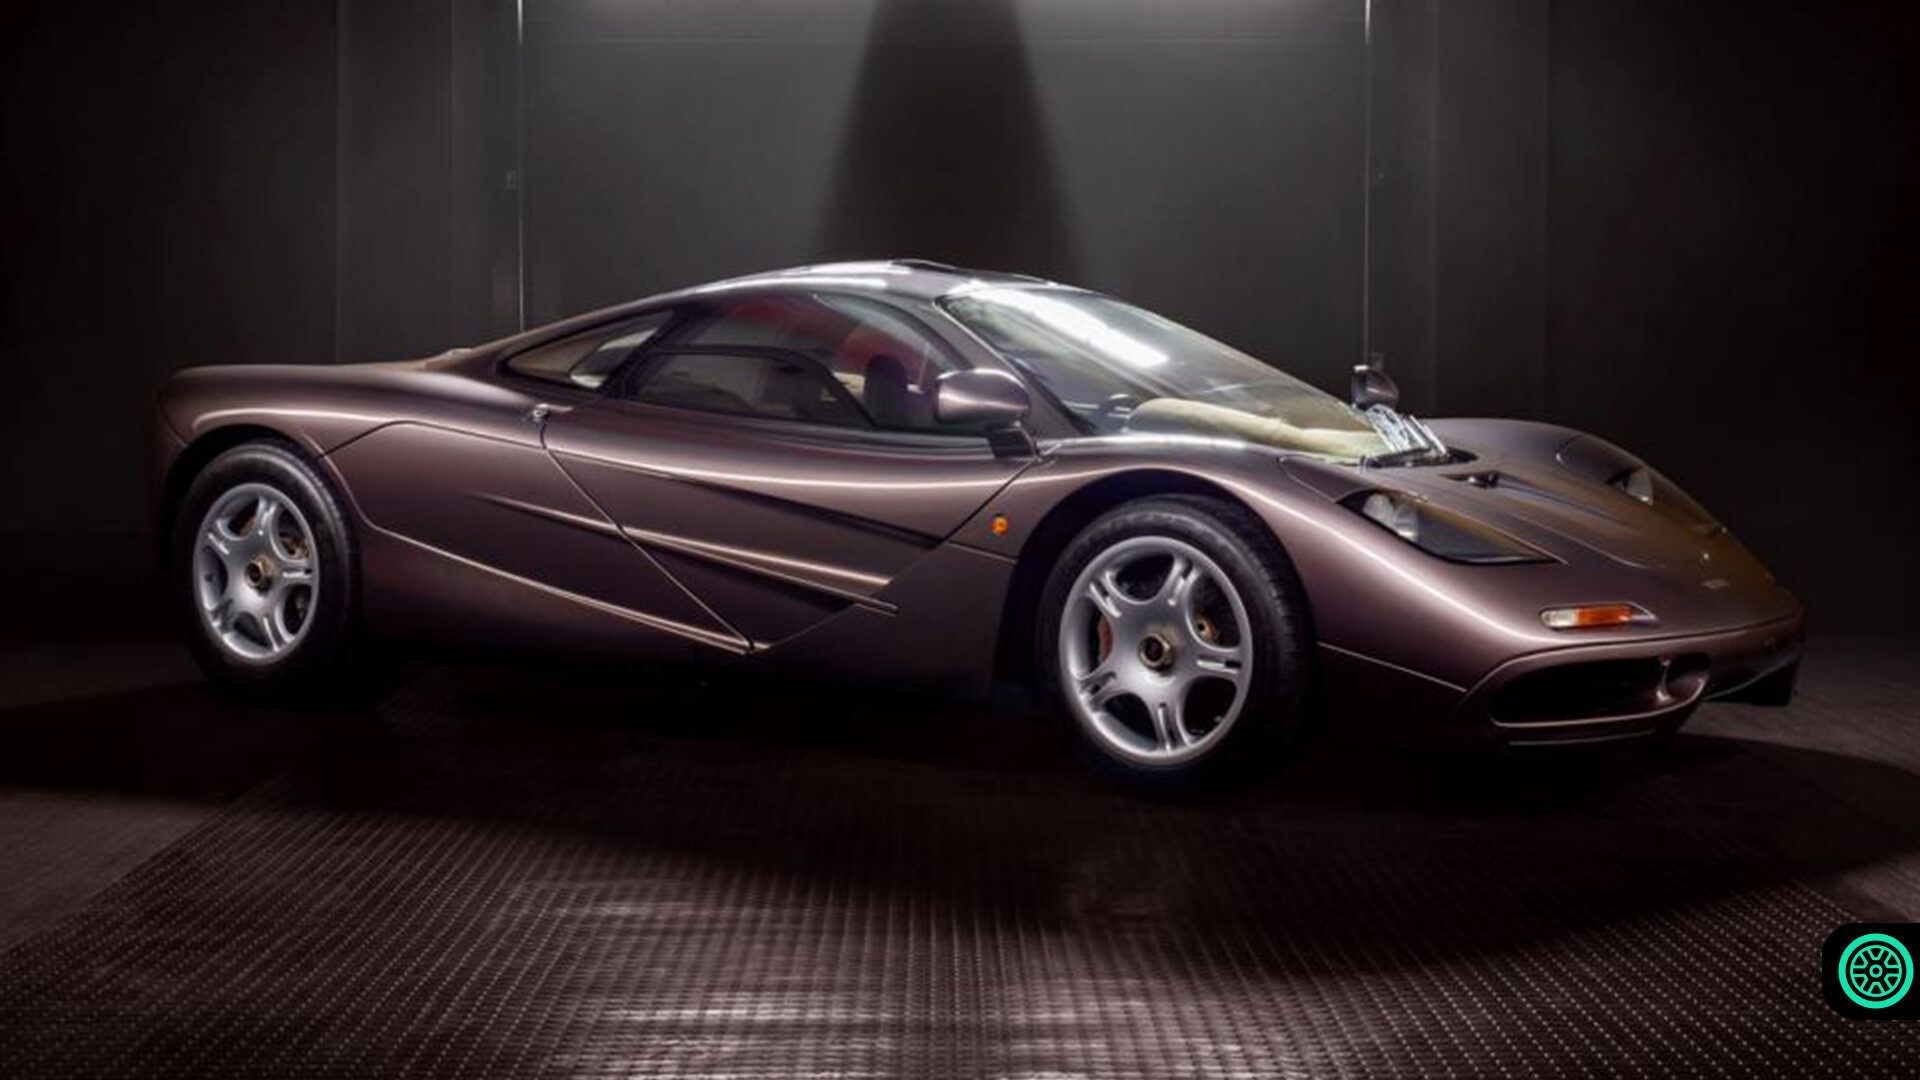 15 milyon dolarlık McLaren F1 modeli 400 km/s hıza ulaştı 1